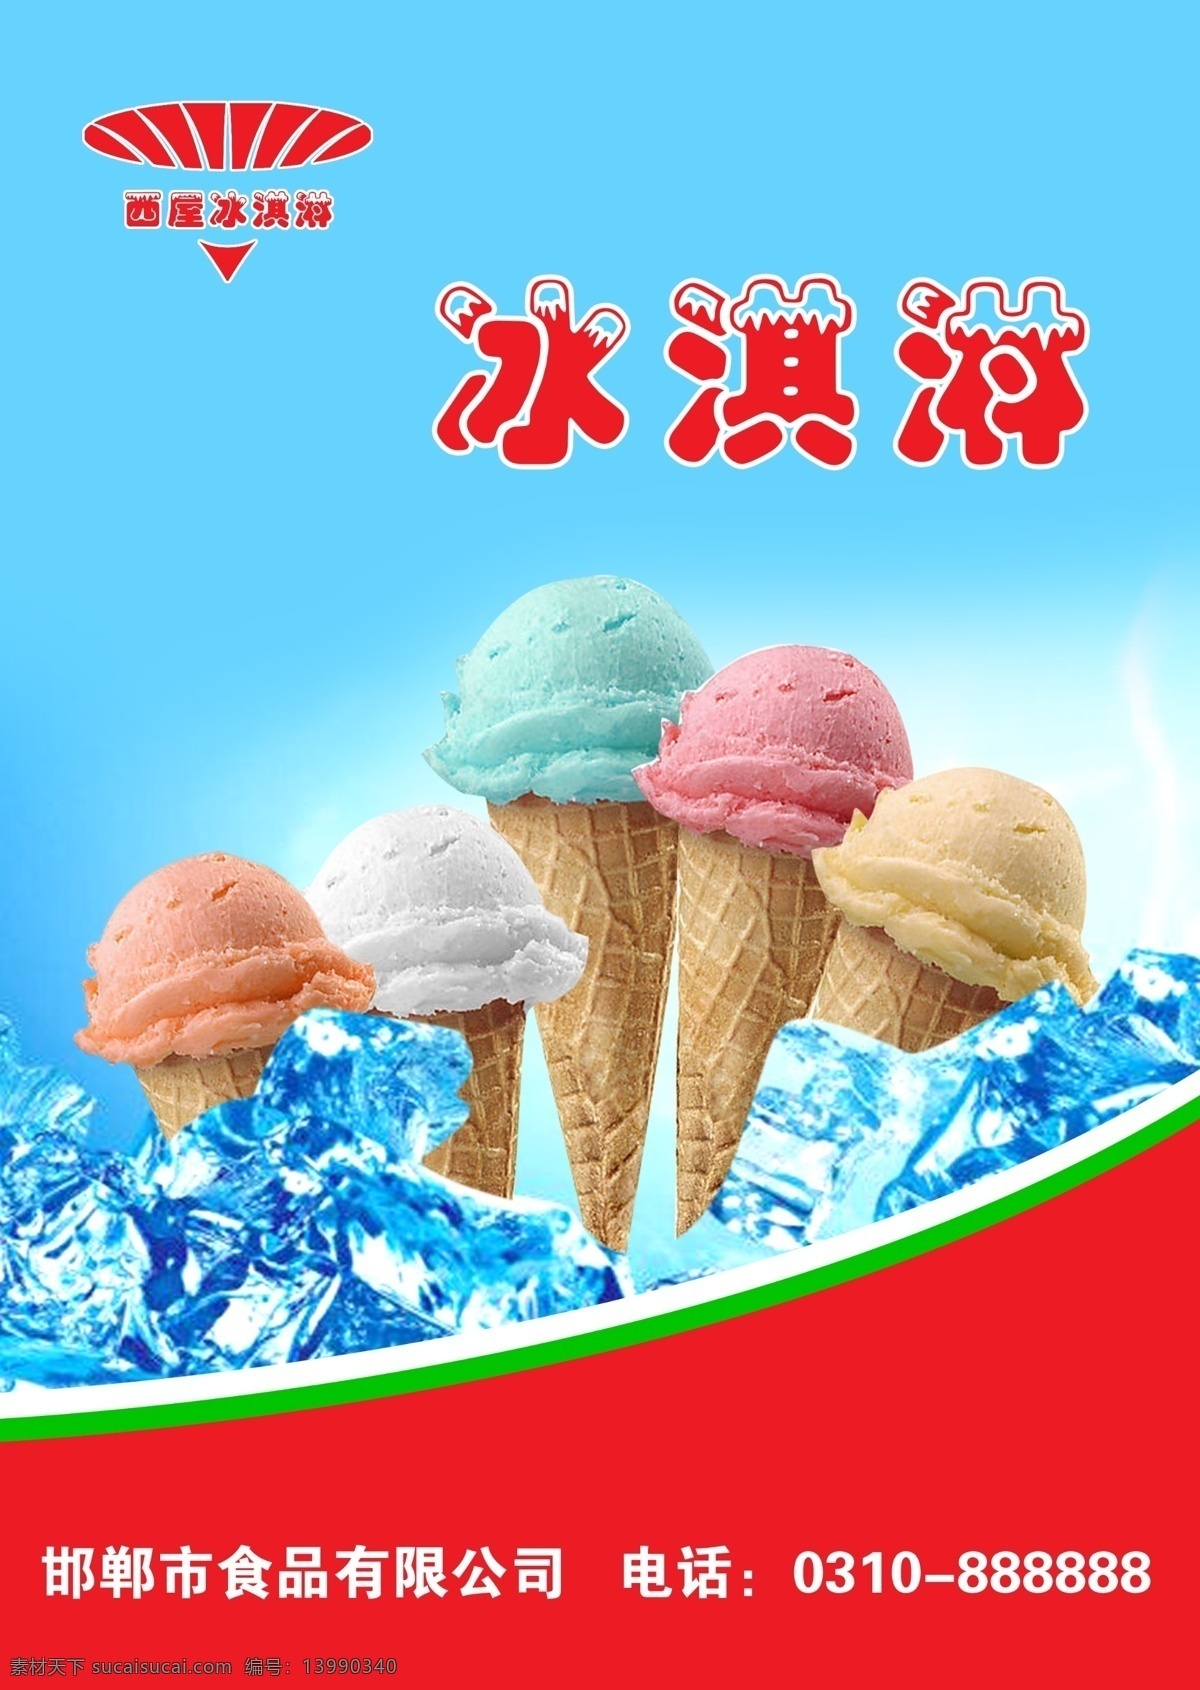 冰淇淋 广告 psd源文件 餐饮素材